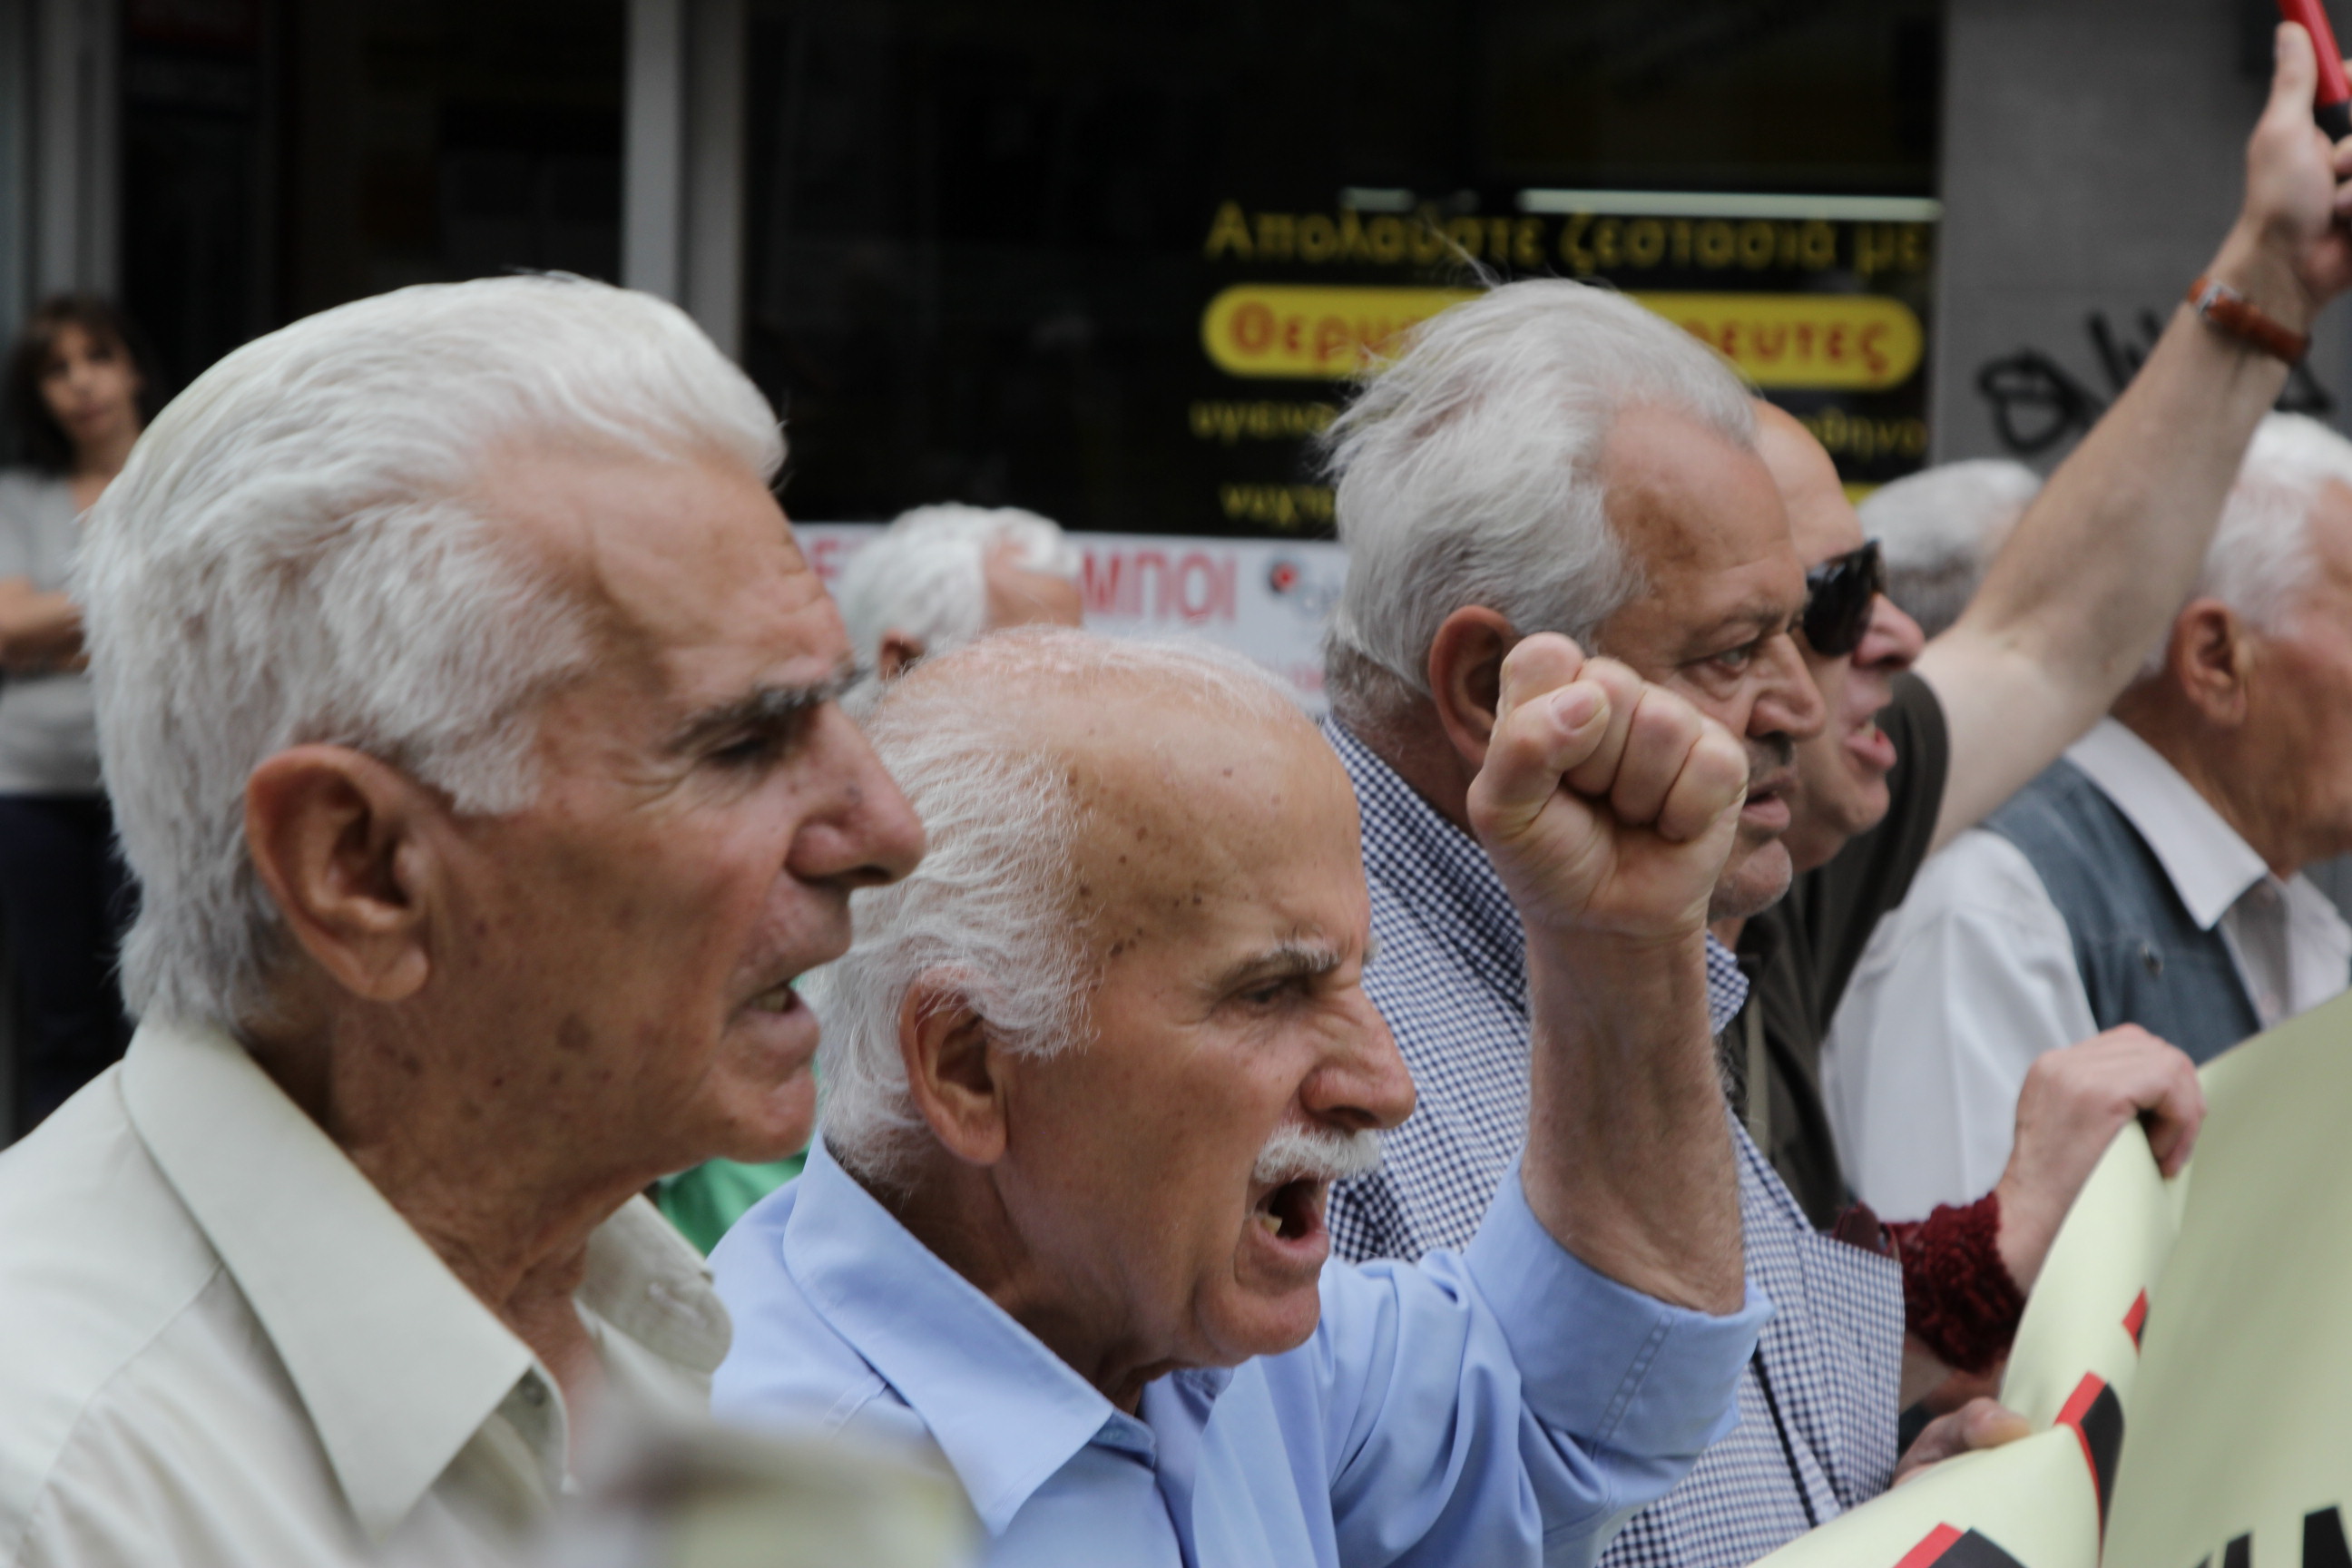 Διαδήλωση συνταξιούχων κατά του νόμου Κατρούγκαλου έξω από το ΣτΕ